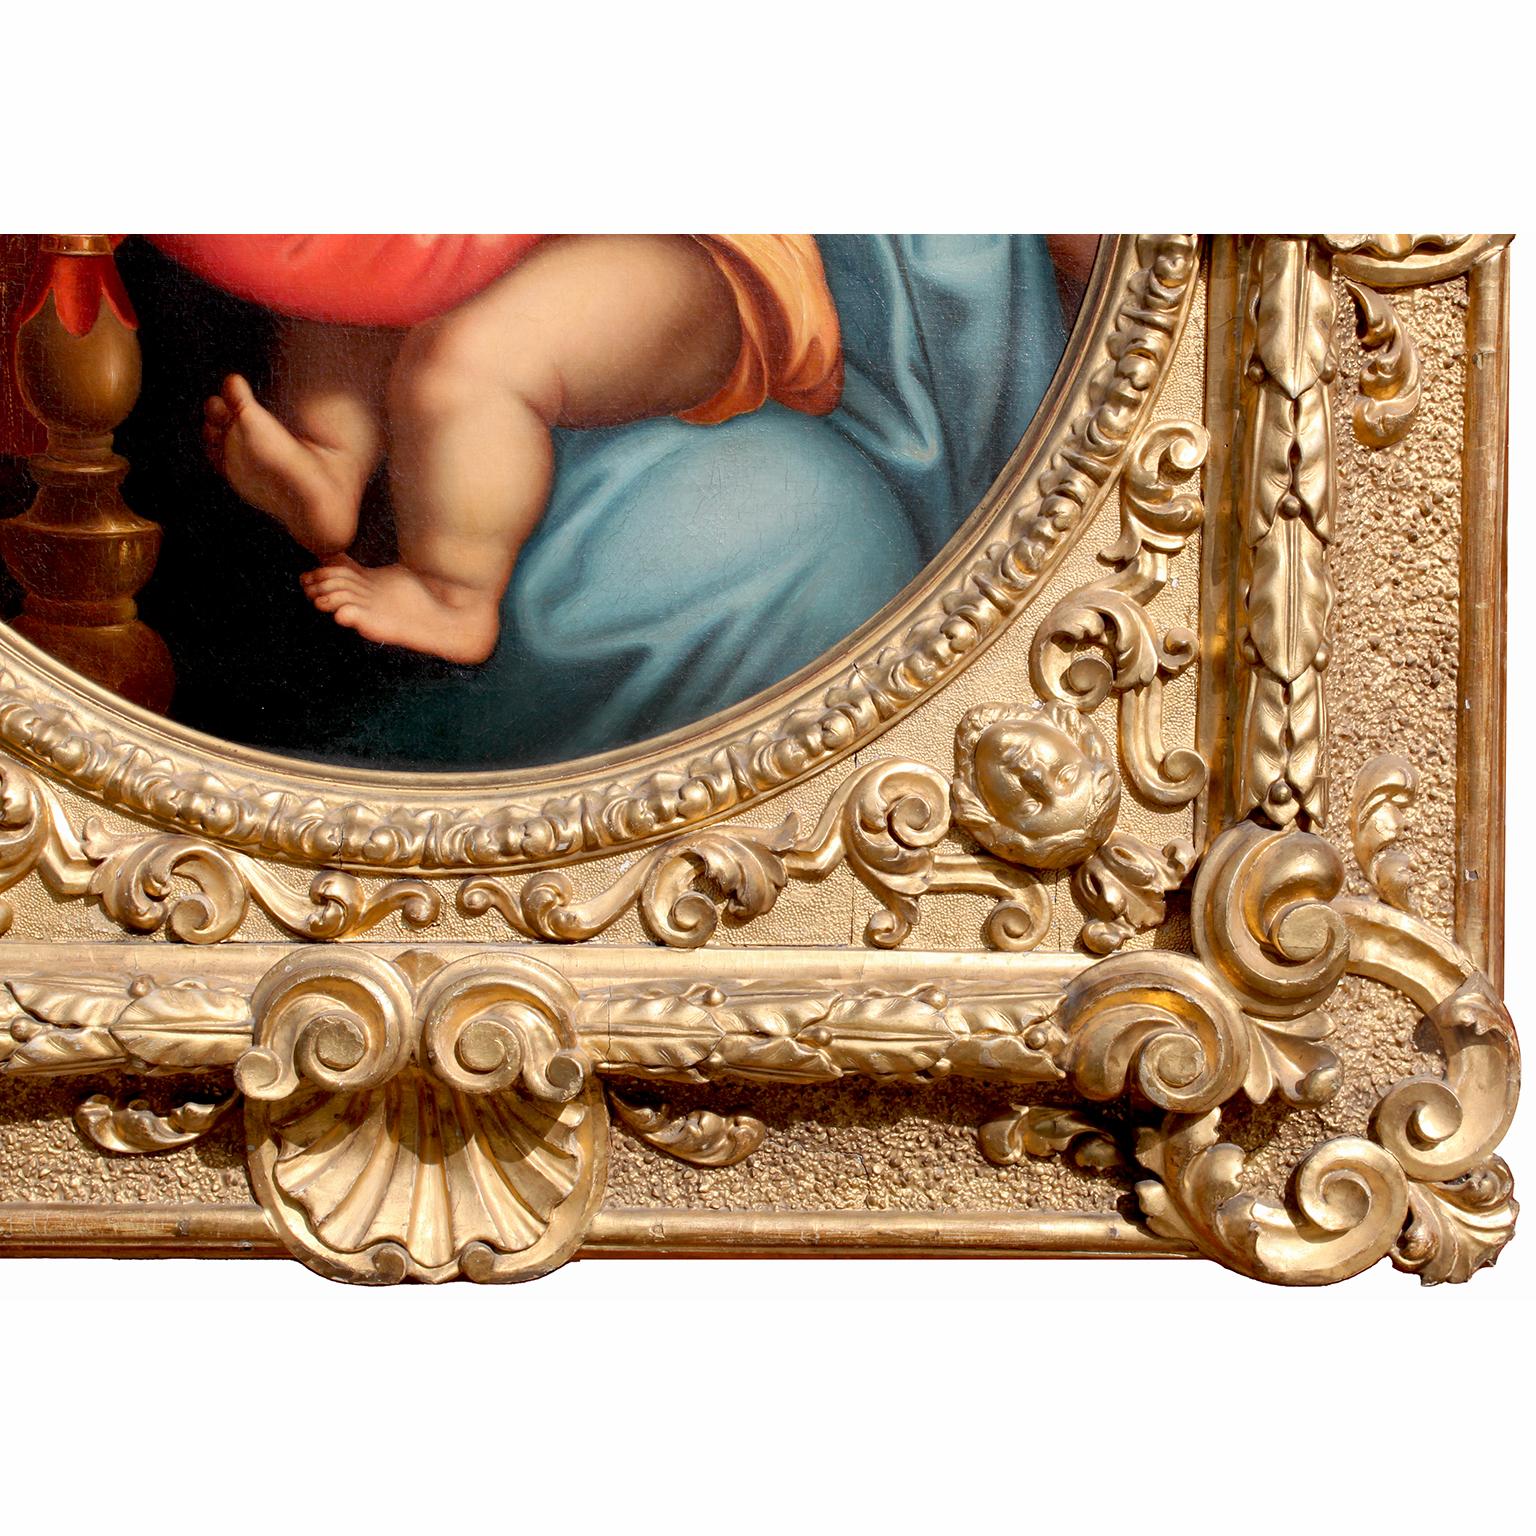 Hand-Carved After Raffaello Sanzio 1483-1520 Raphael La Madonna Della Seggiola Oil on Canvas For Sale